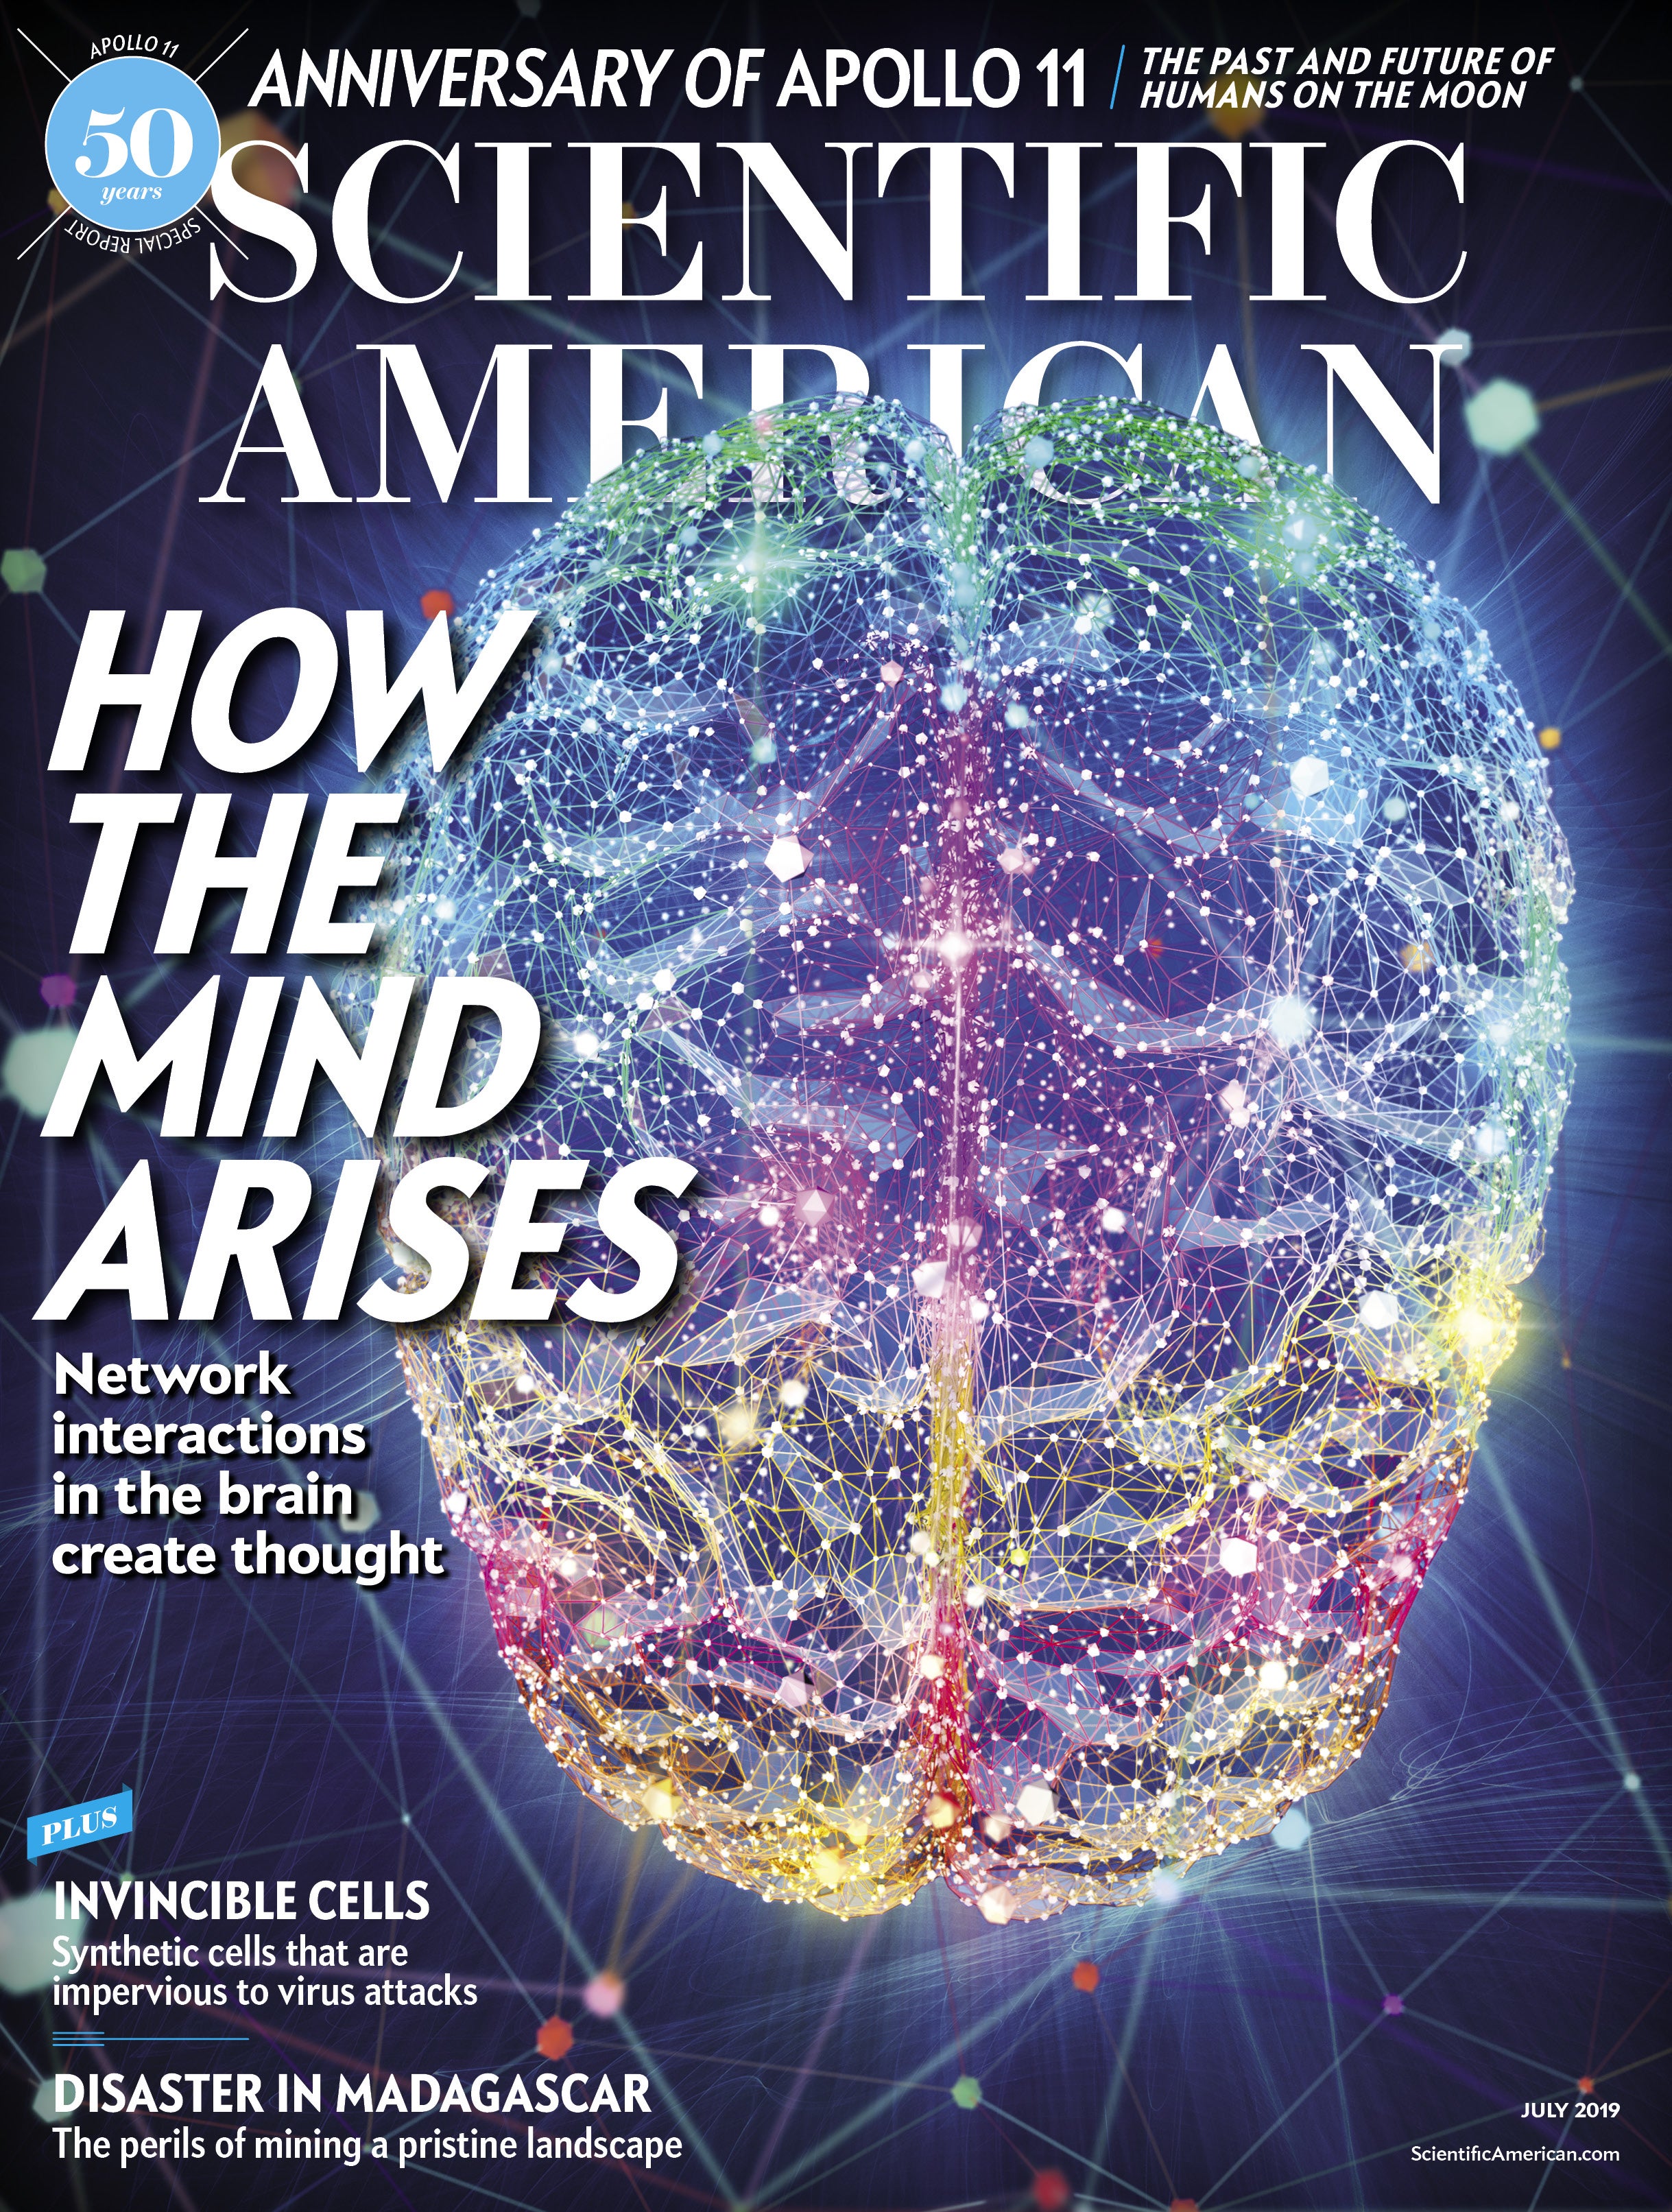 Scientific American: How the Mind Arises